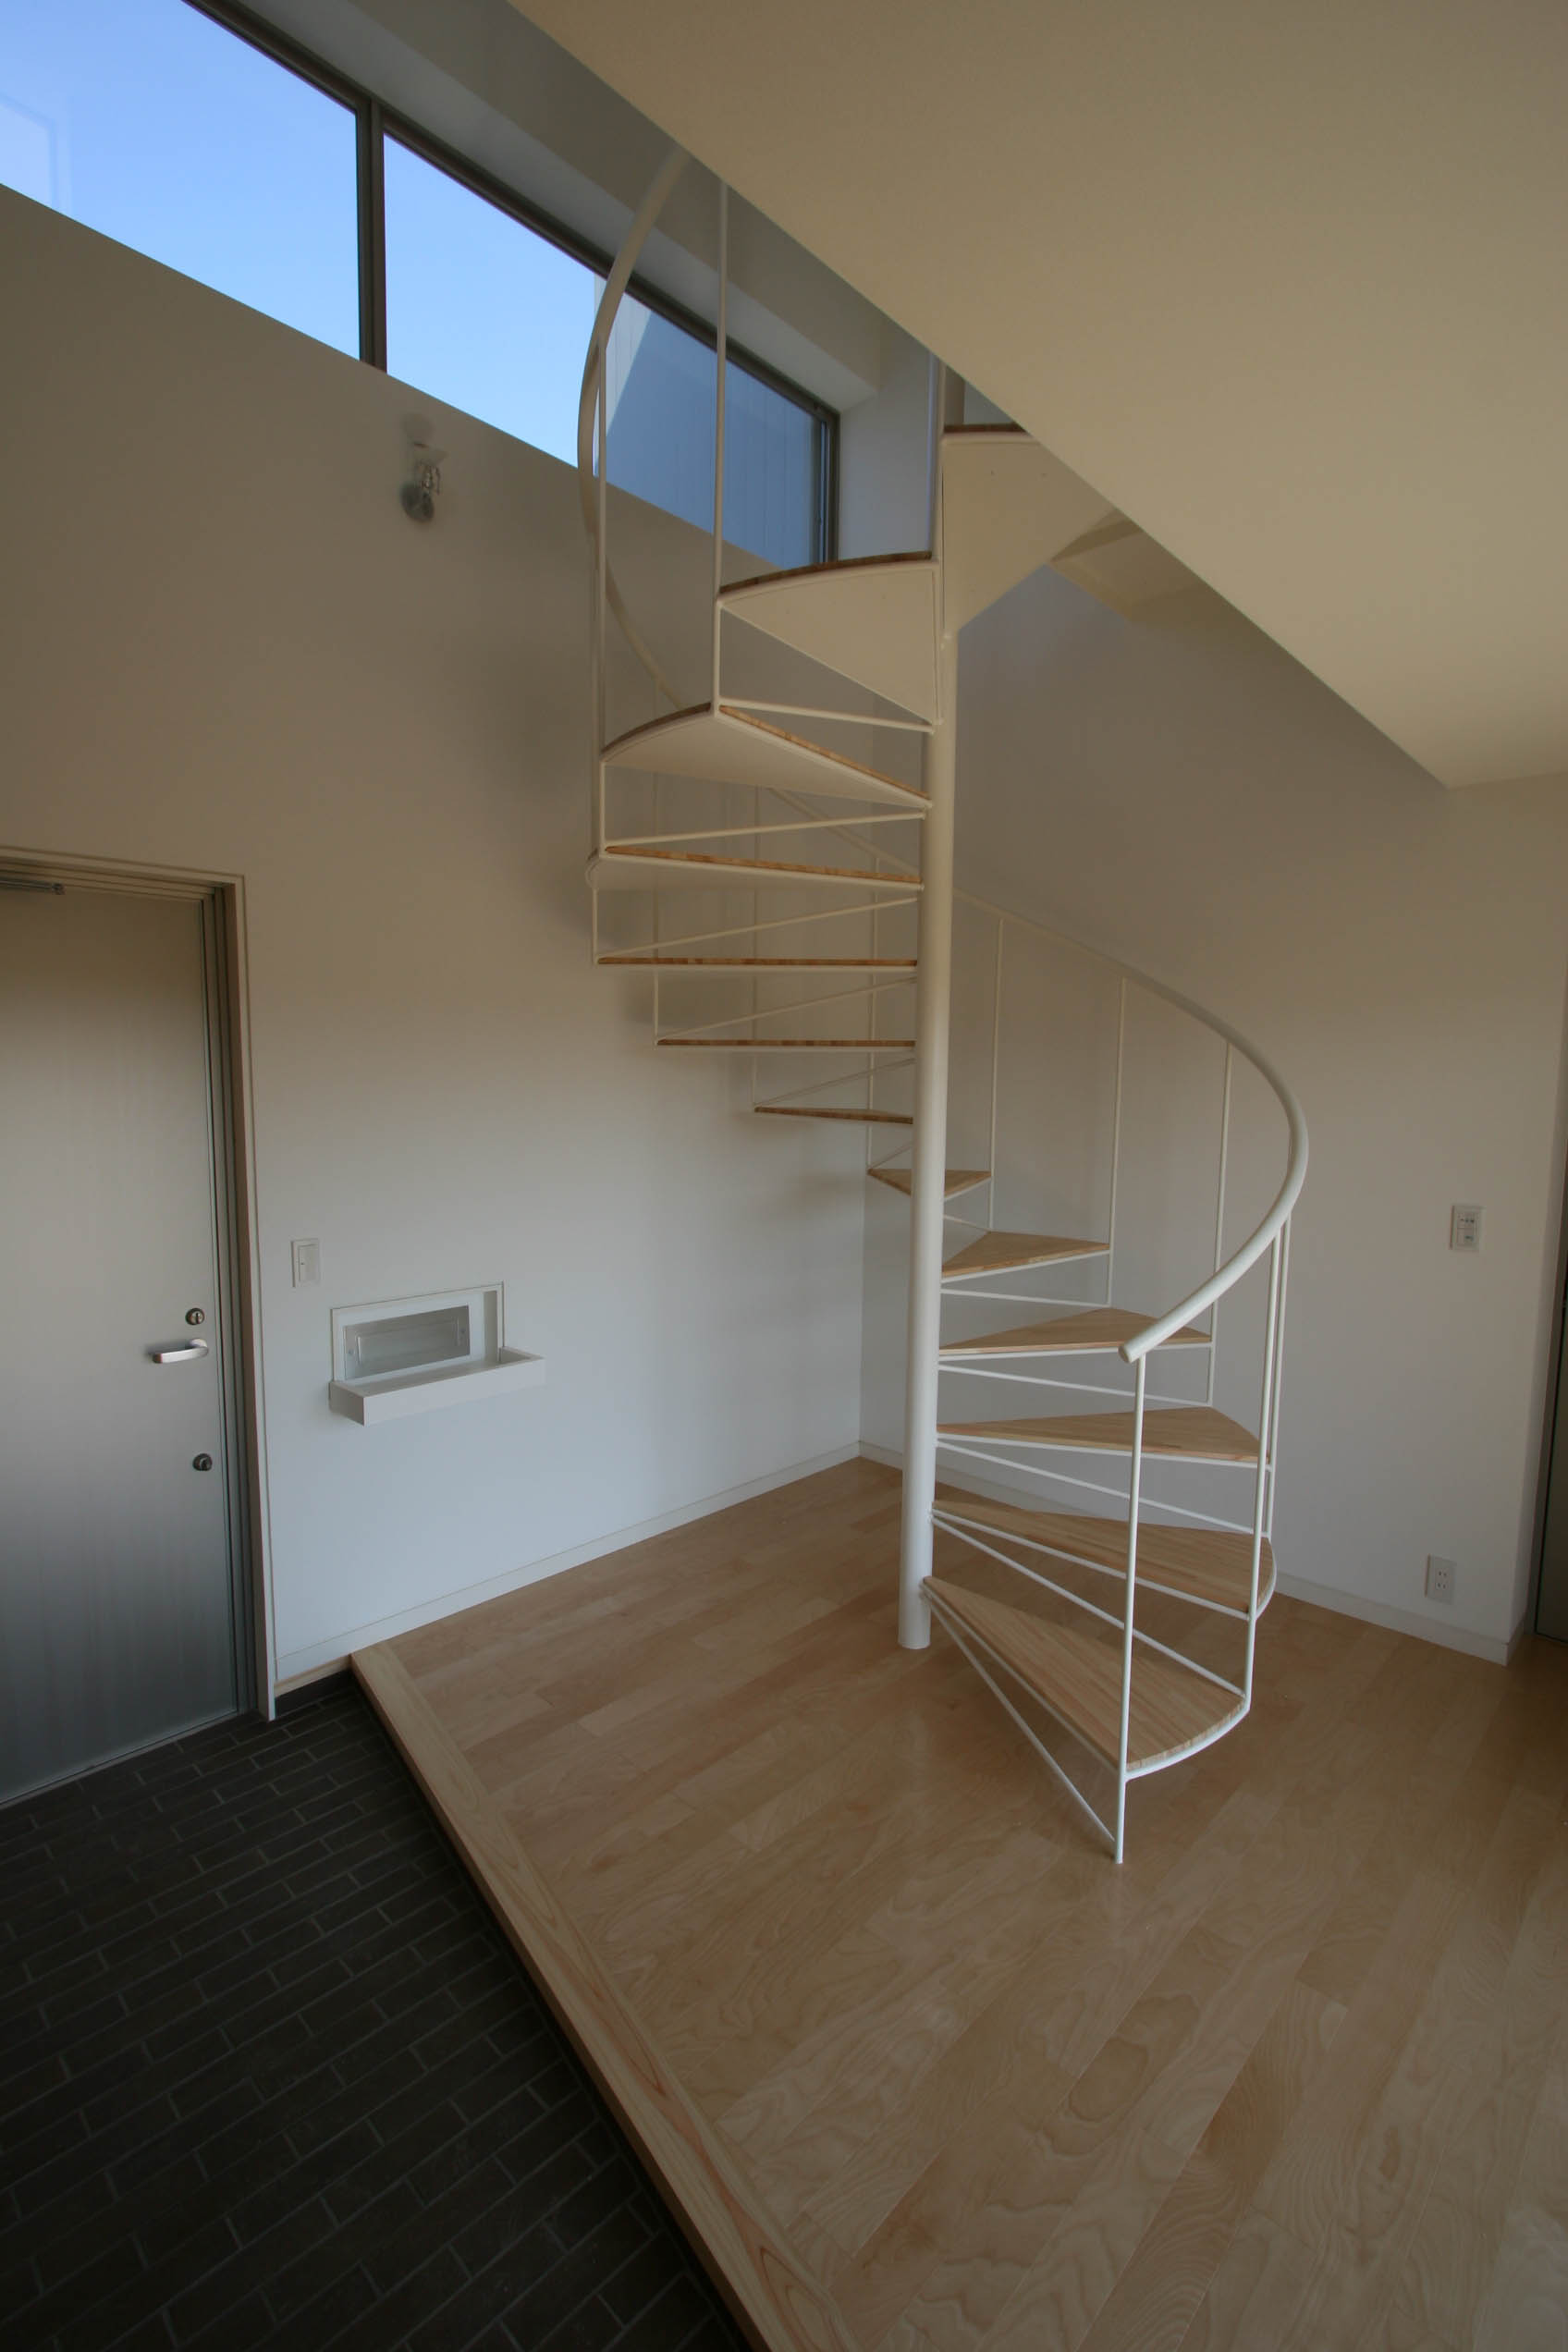 限られた空間を有効に利用するため、玄関にある階段はらせん階段を採用しました